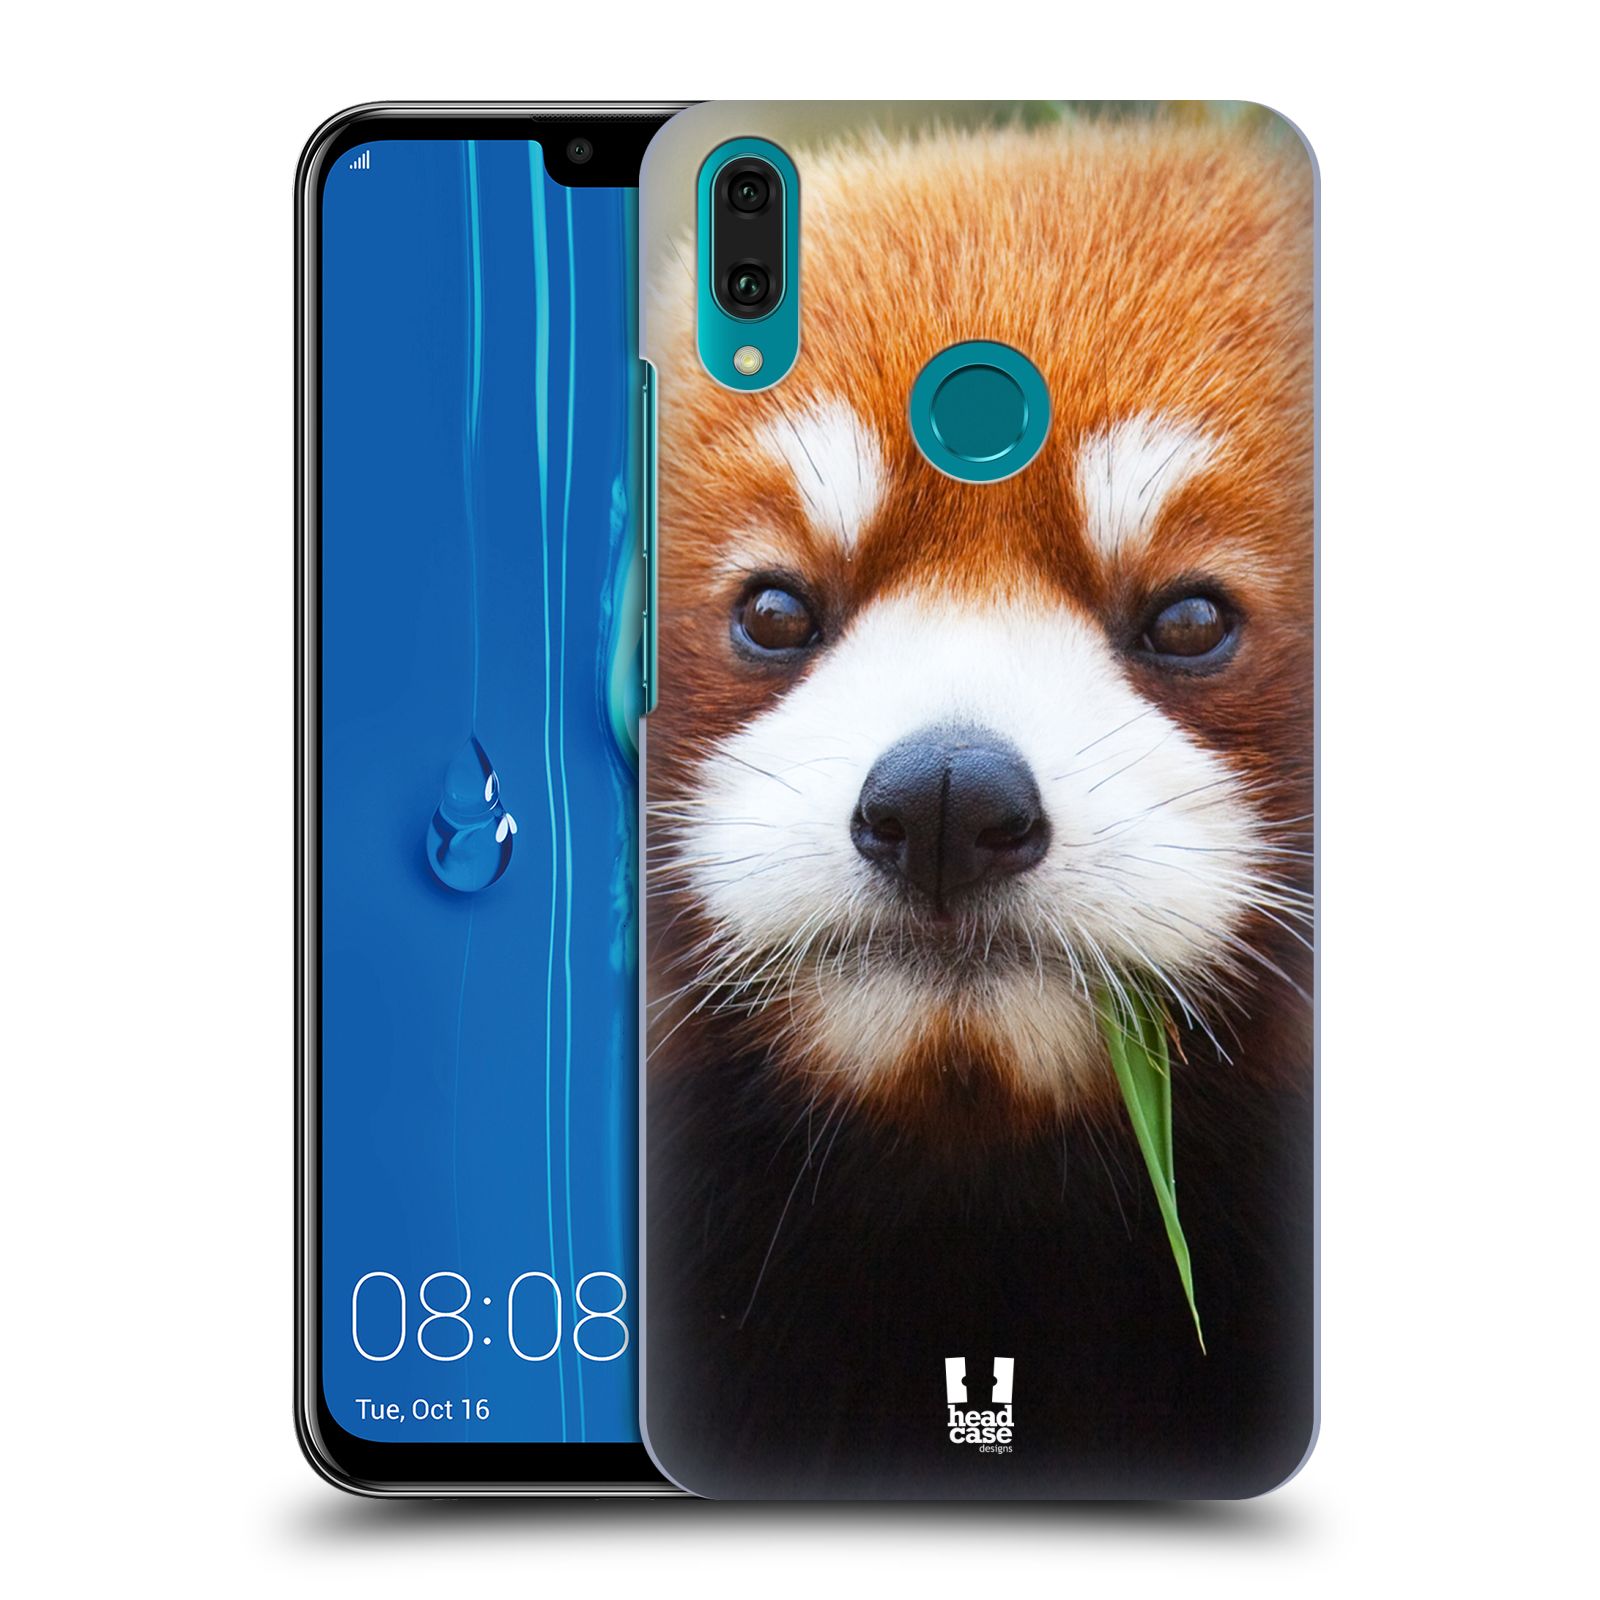 Pouzdro na mobil Huawei Y9 2019 - HEAD CASE - vzor Divočina, Divoký život a zvířata foto PANDA HNĚDÁ